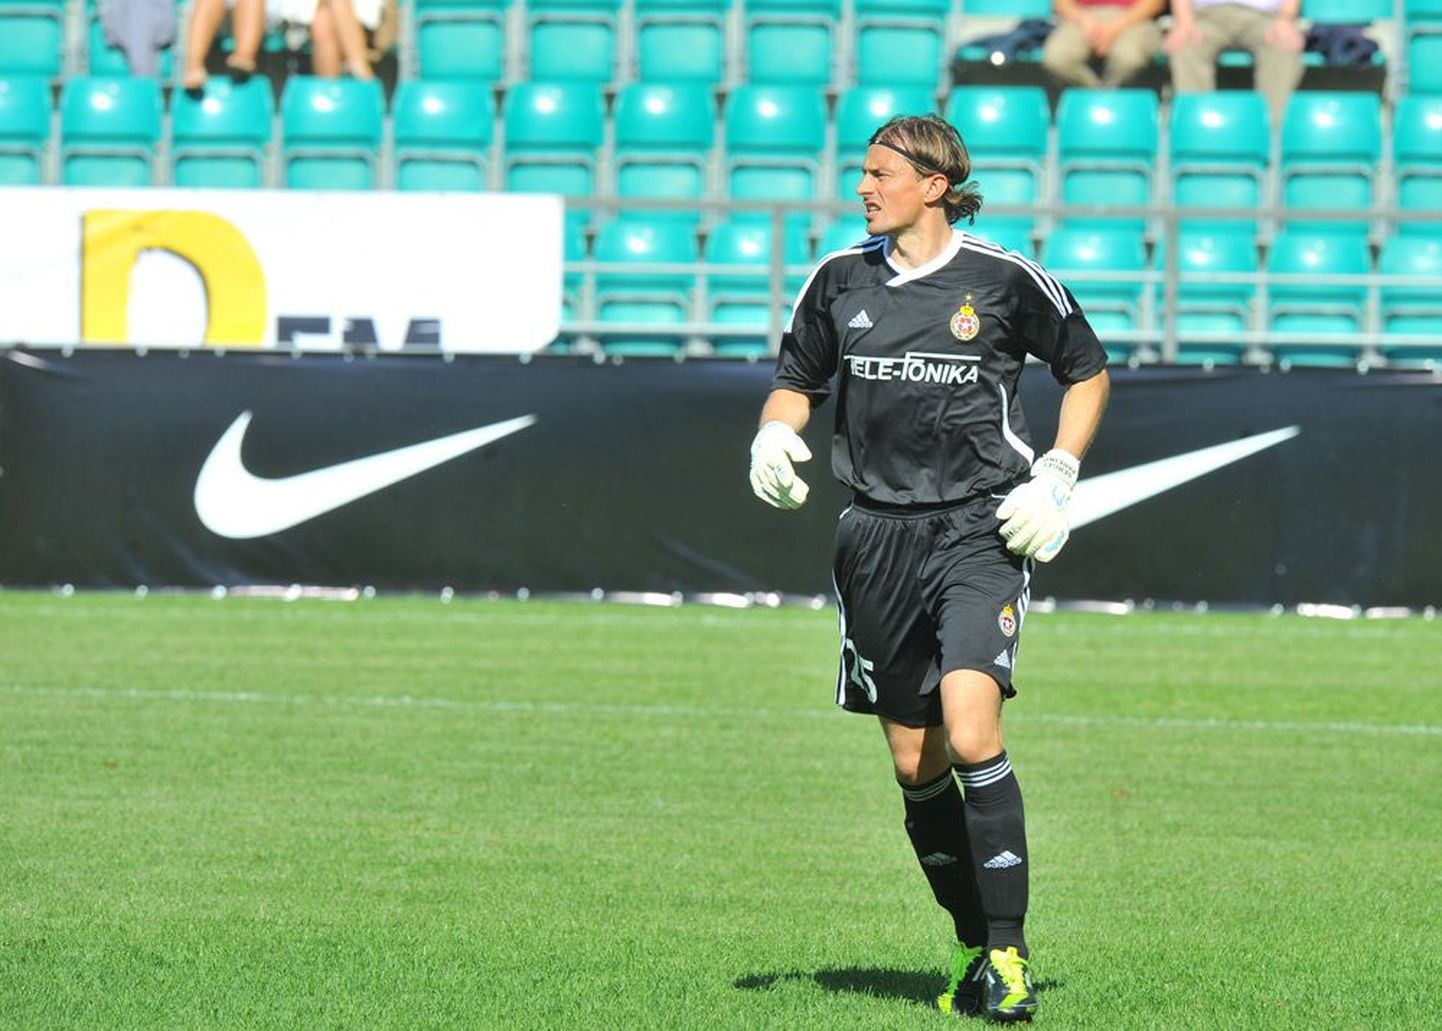 Вчера во время матча на стадионе в Лиллекюла Сергей Парейко пропустил в свои ворота два мяча.